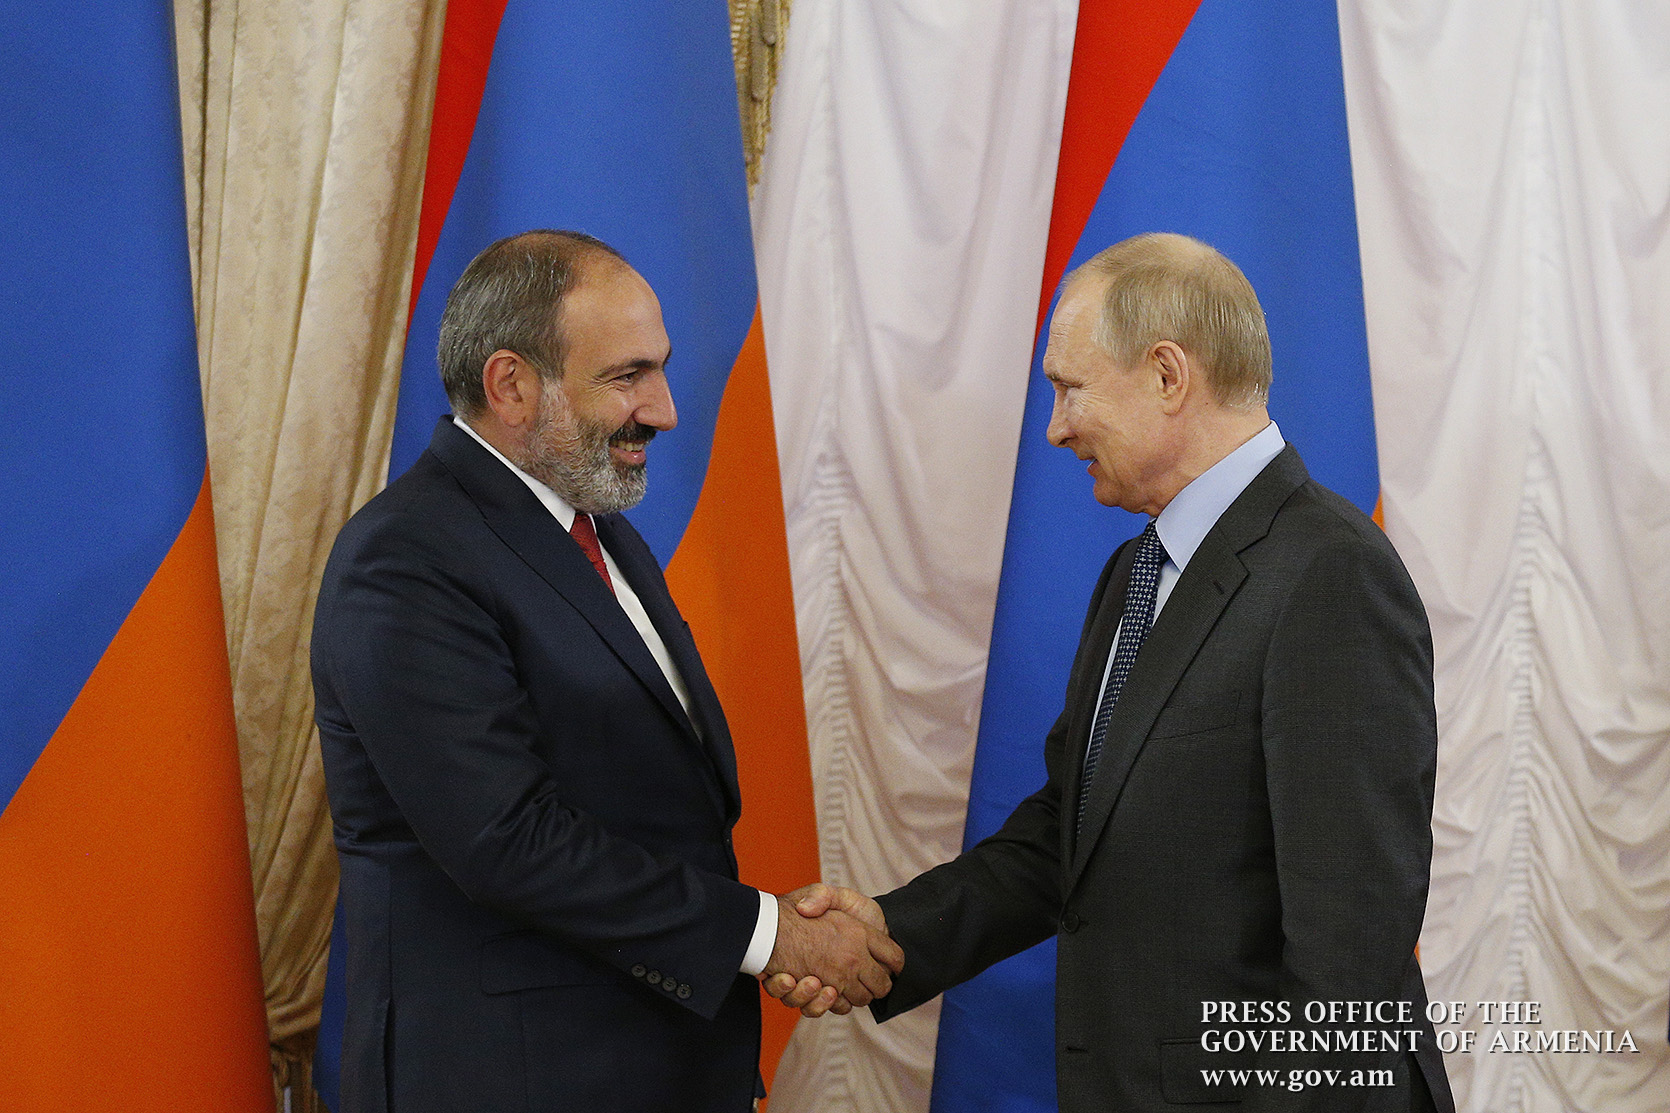 Мы высоко ценим наши отношения с Арменией - Путин поздравил Пашиняна с Новым годом